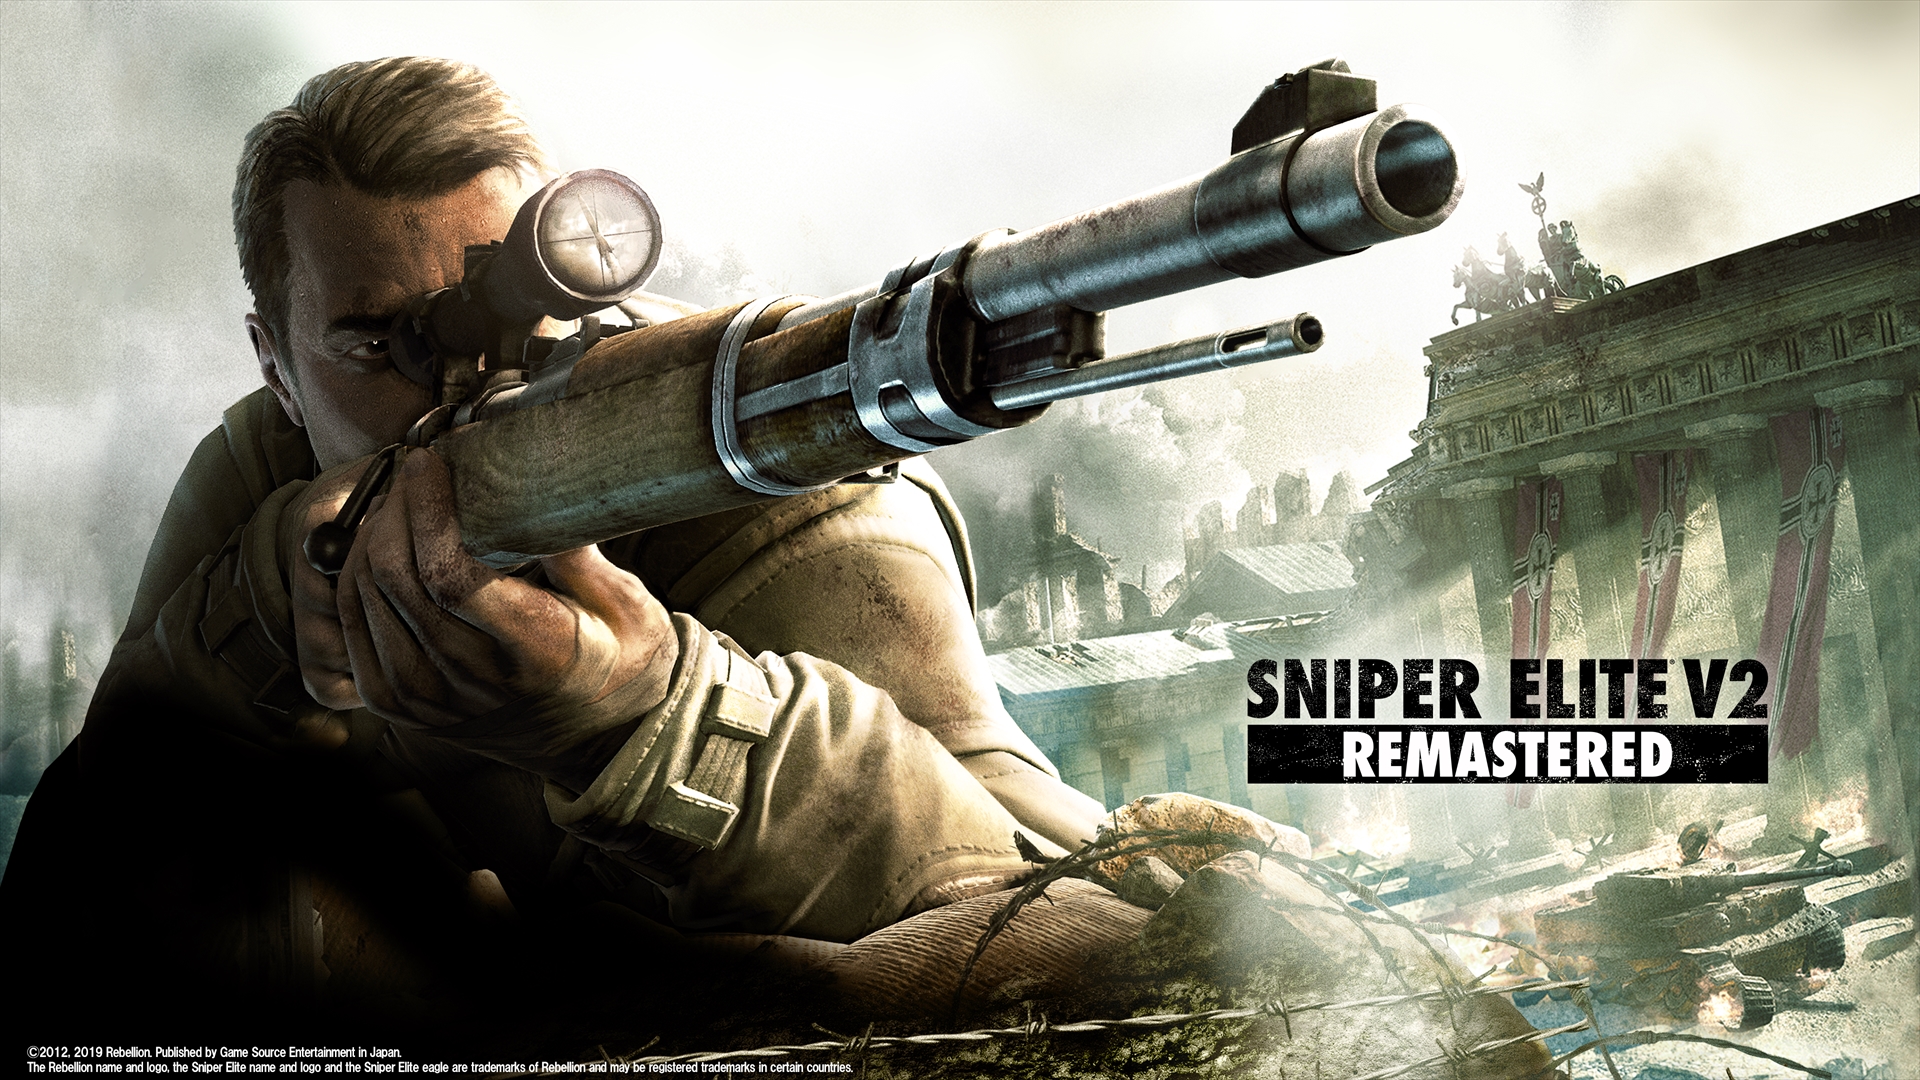 遠距離からの的確な狙撃などアクションシーン満載 Sniper Elite V2 Remasterd のトレーラーが公開 Game Watch